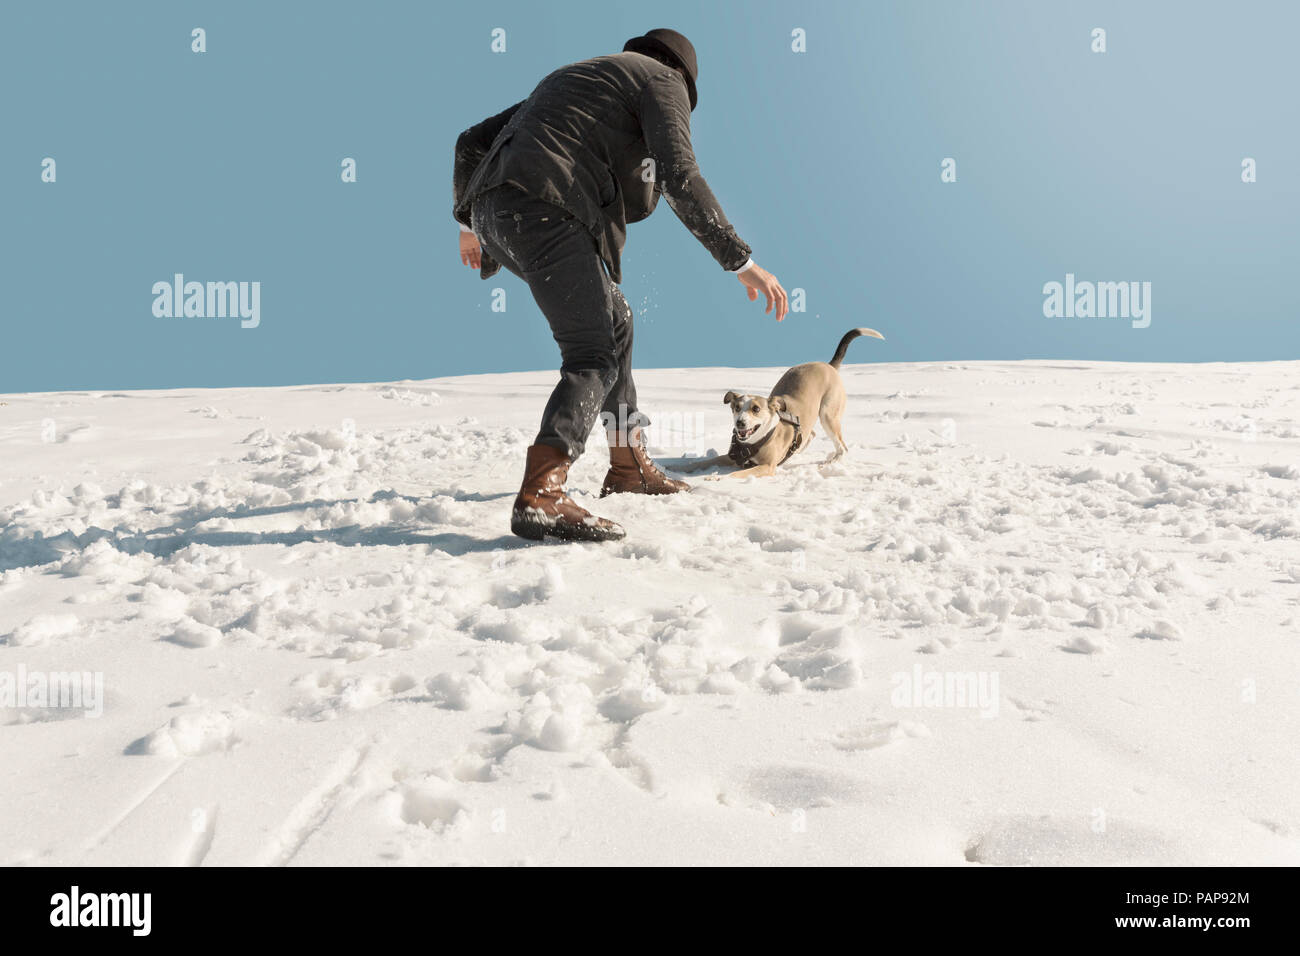 L'uomo gioca con il cane in inverno, avendo divertimento nella neve Foto Stock